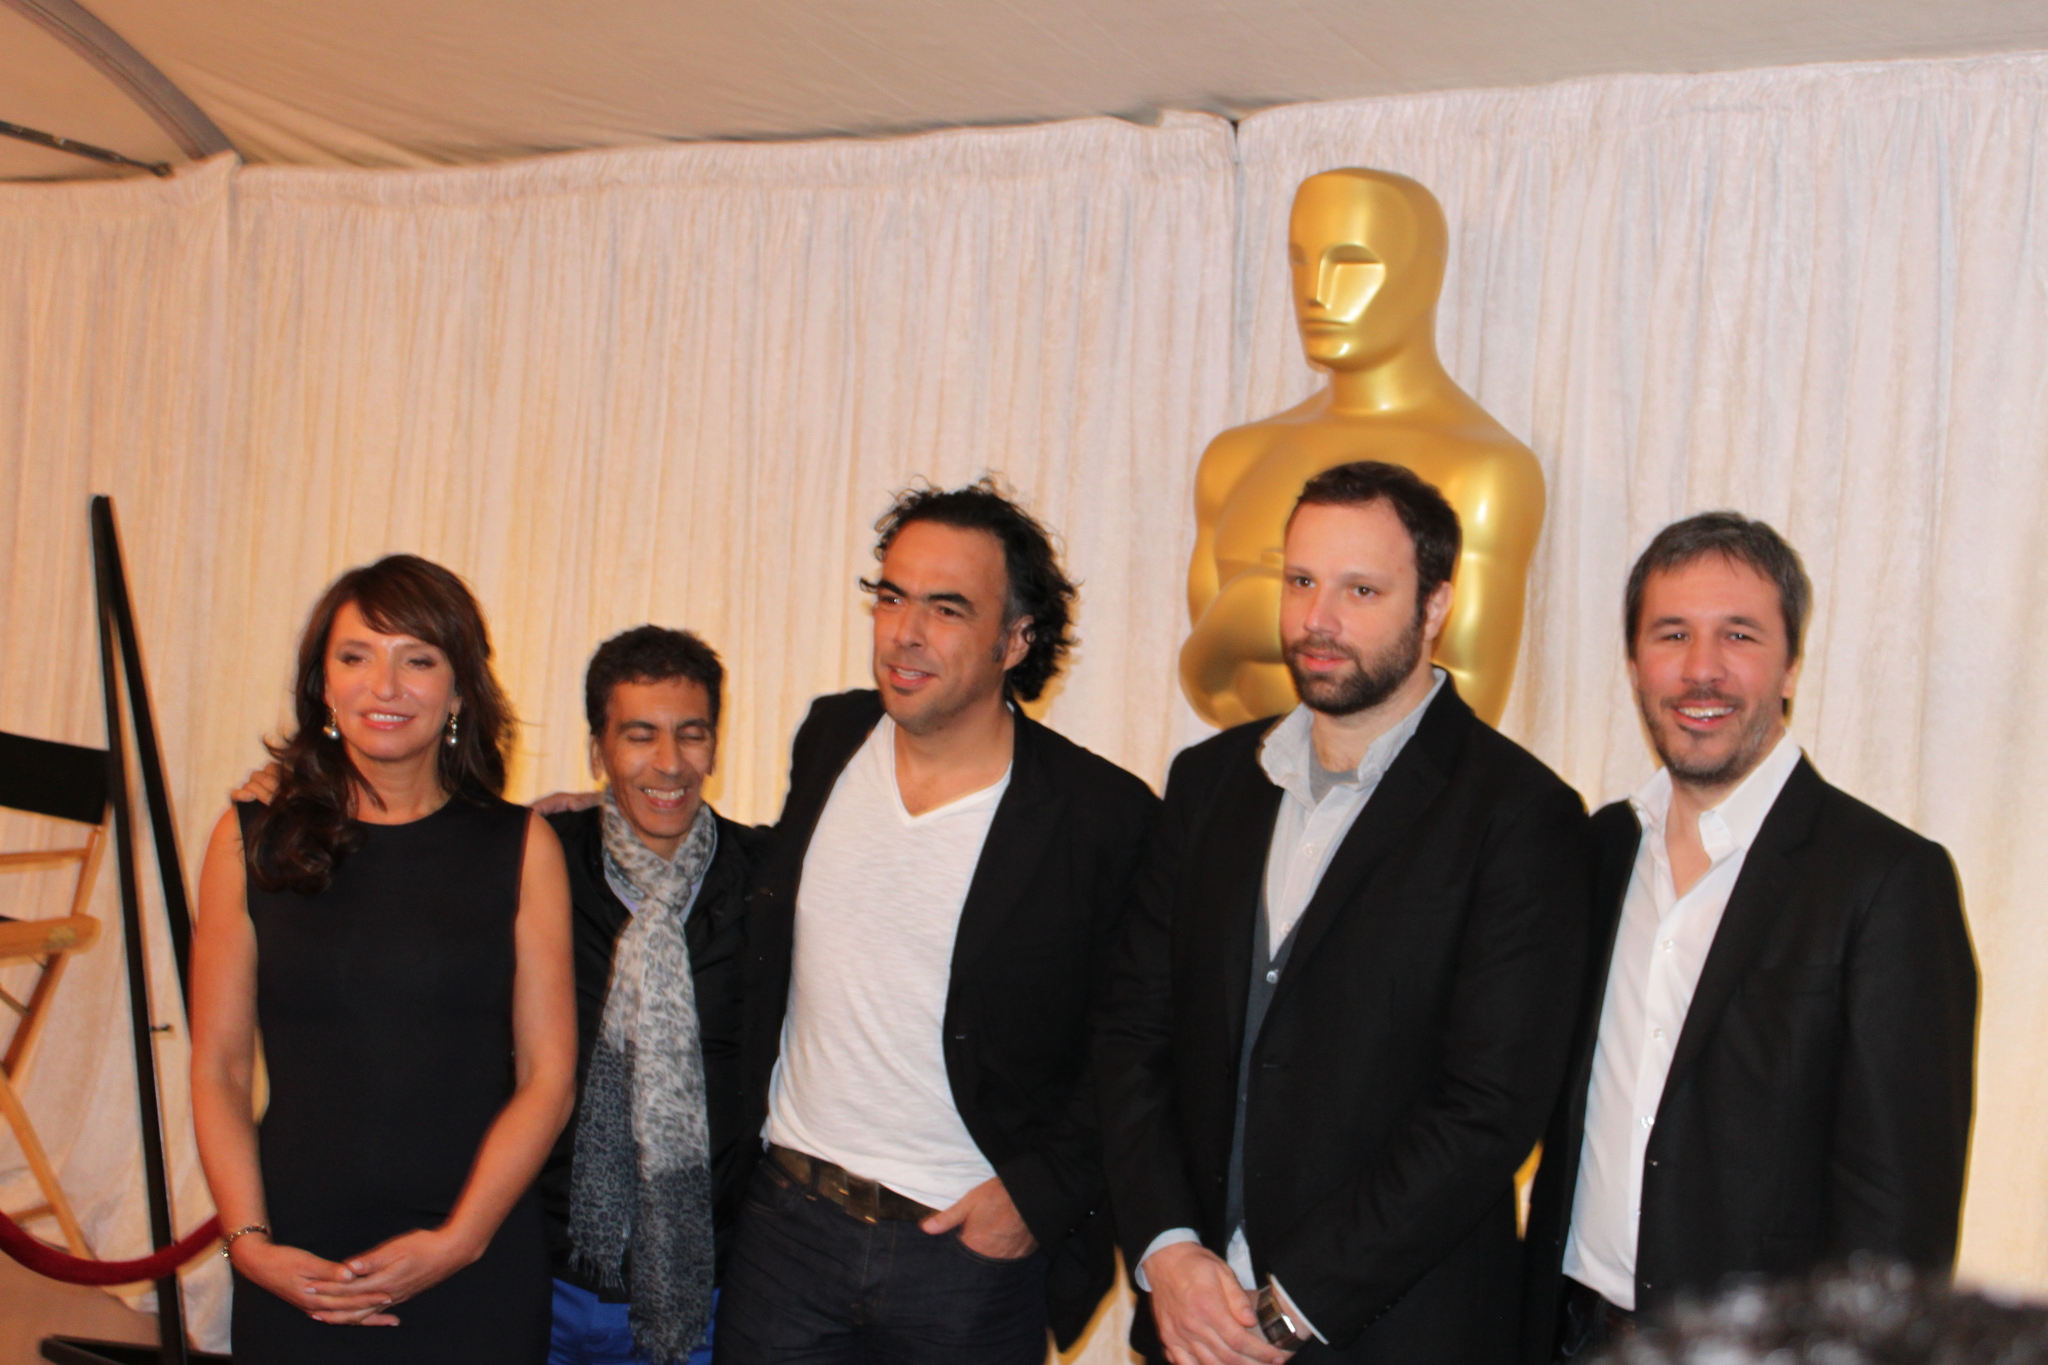 Susanne Bier, Rachid Bouchareb, Alejandro González Iñárritu, Yorgos Lanthimos and Denis Villeneuve